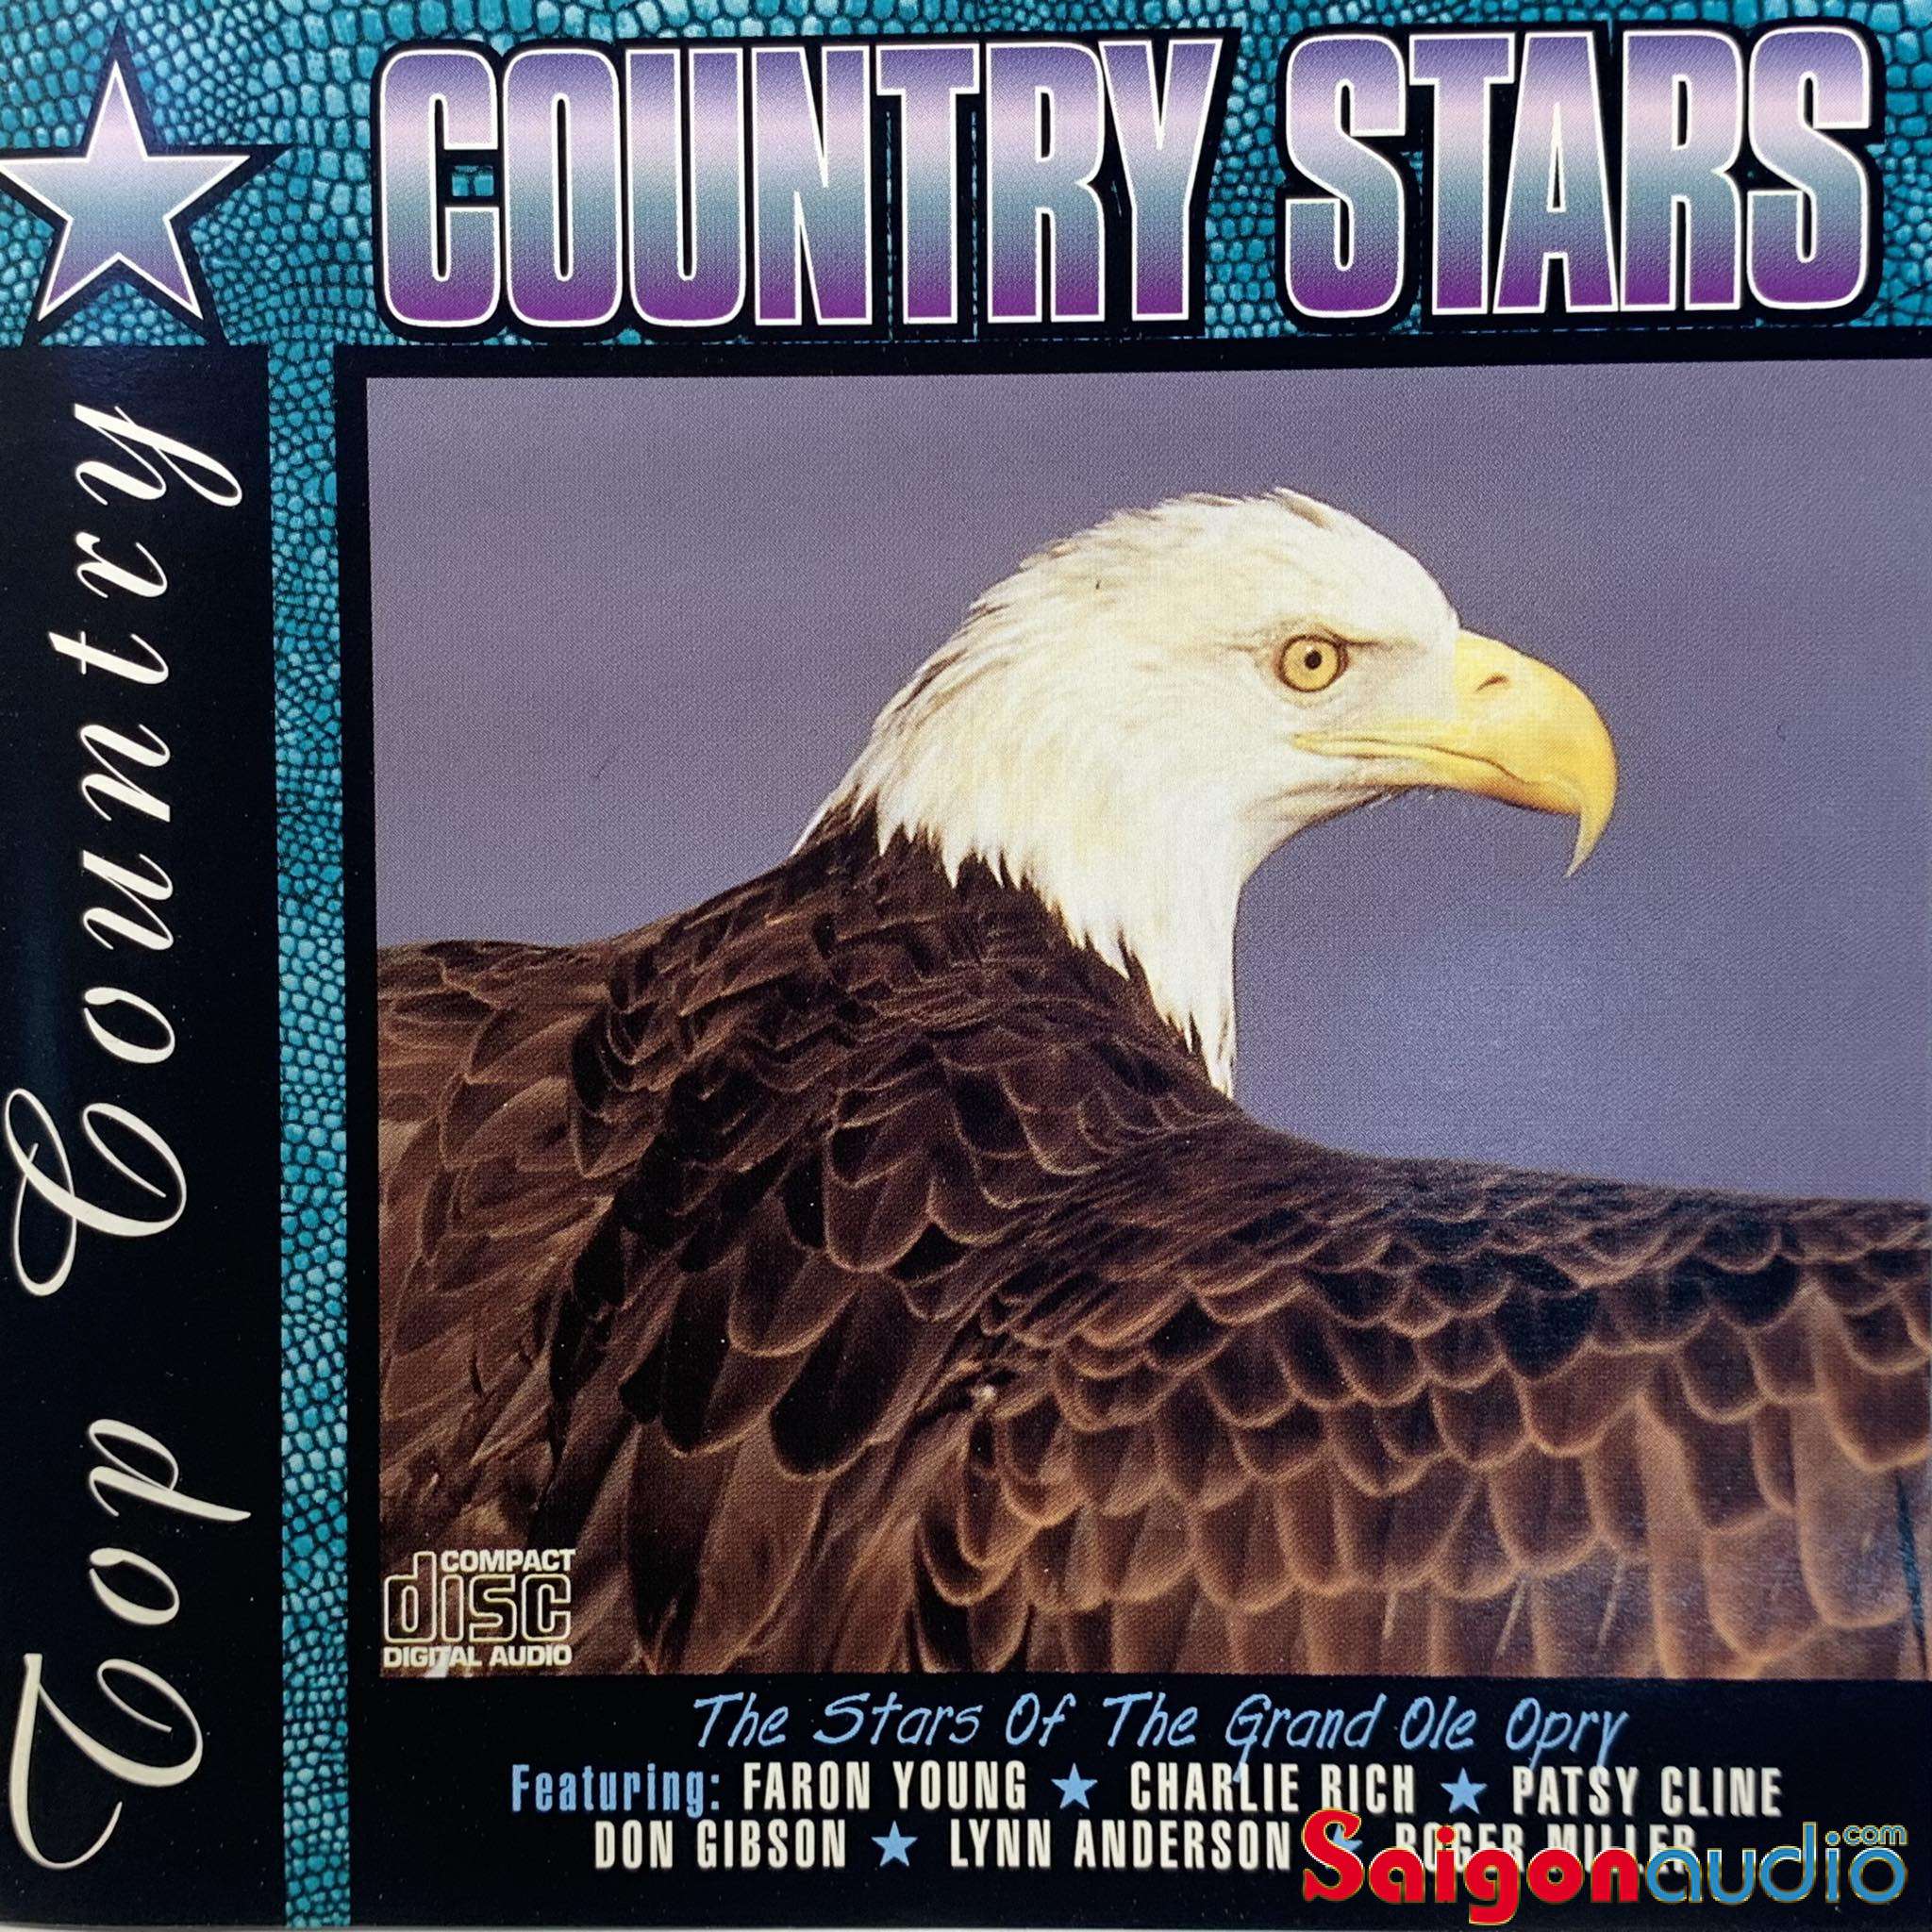 Đĩa CD gốc nhạc Top Country - Country Stars (Free ship khi mua 2 đĩa CD cùng hoặc khác loại)